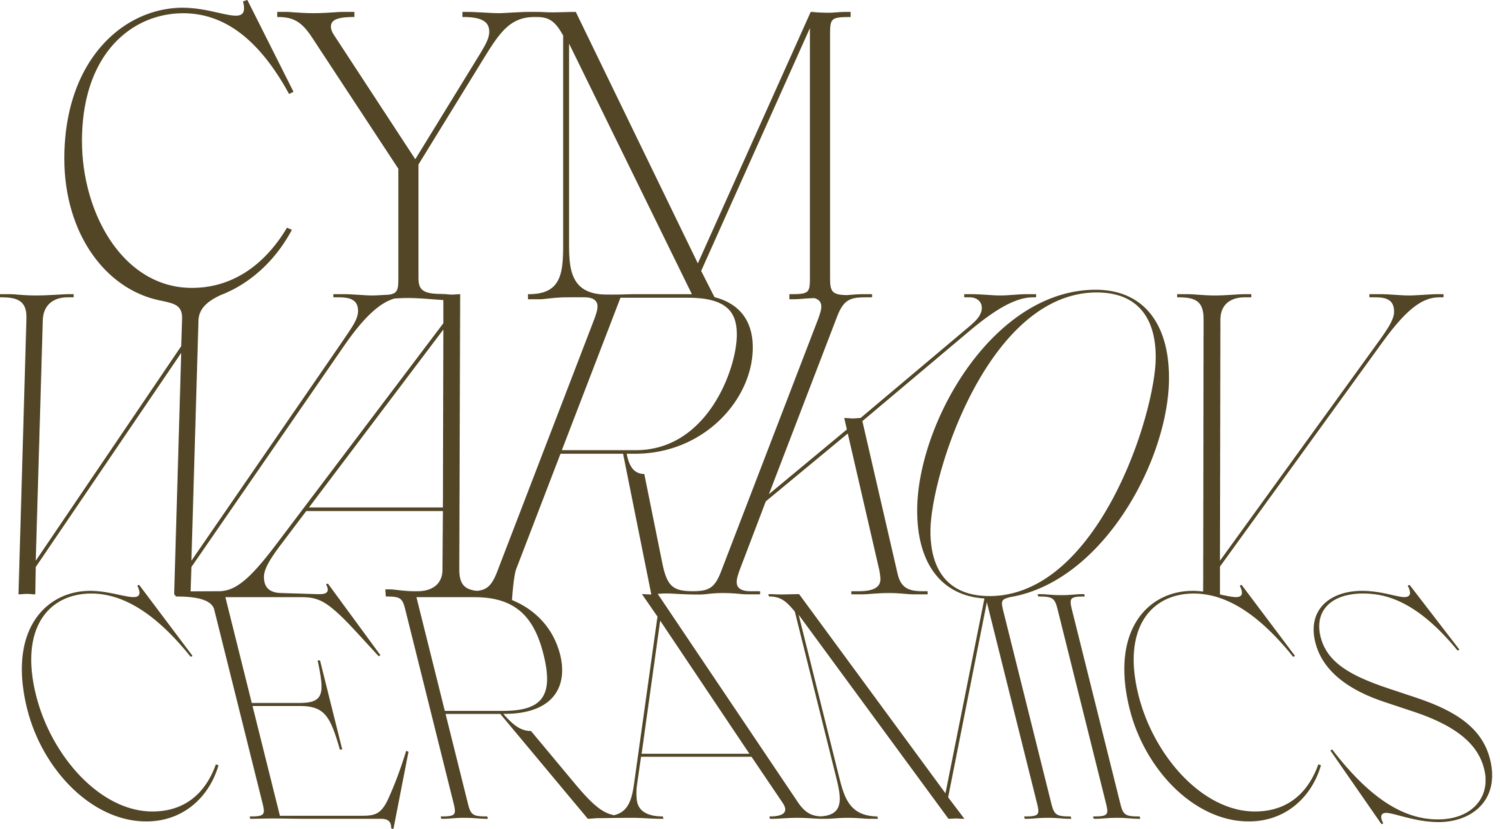 Cym Warkov Ceramics